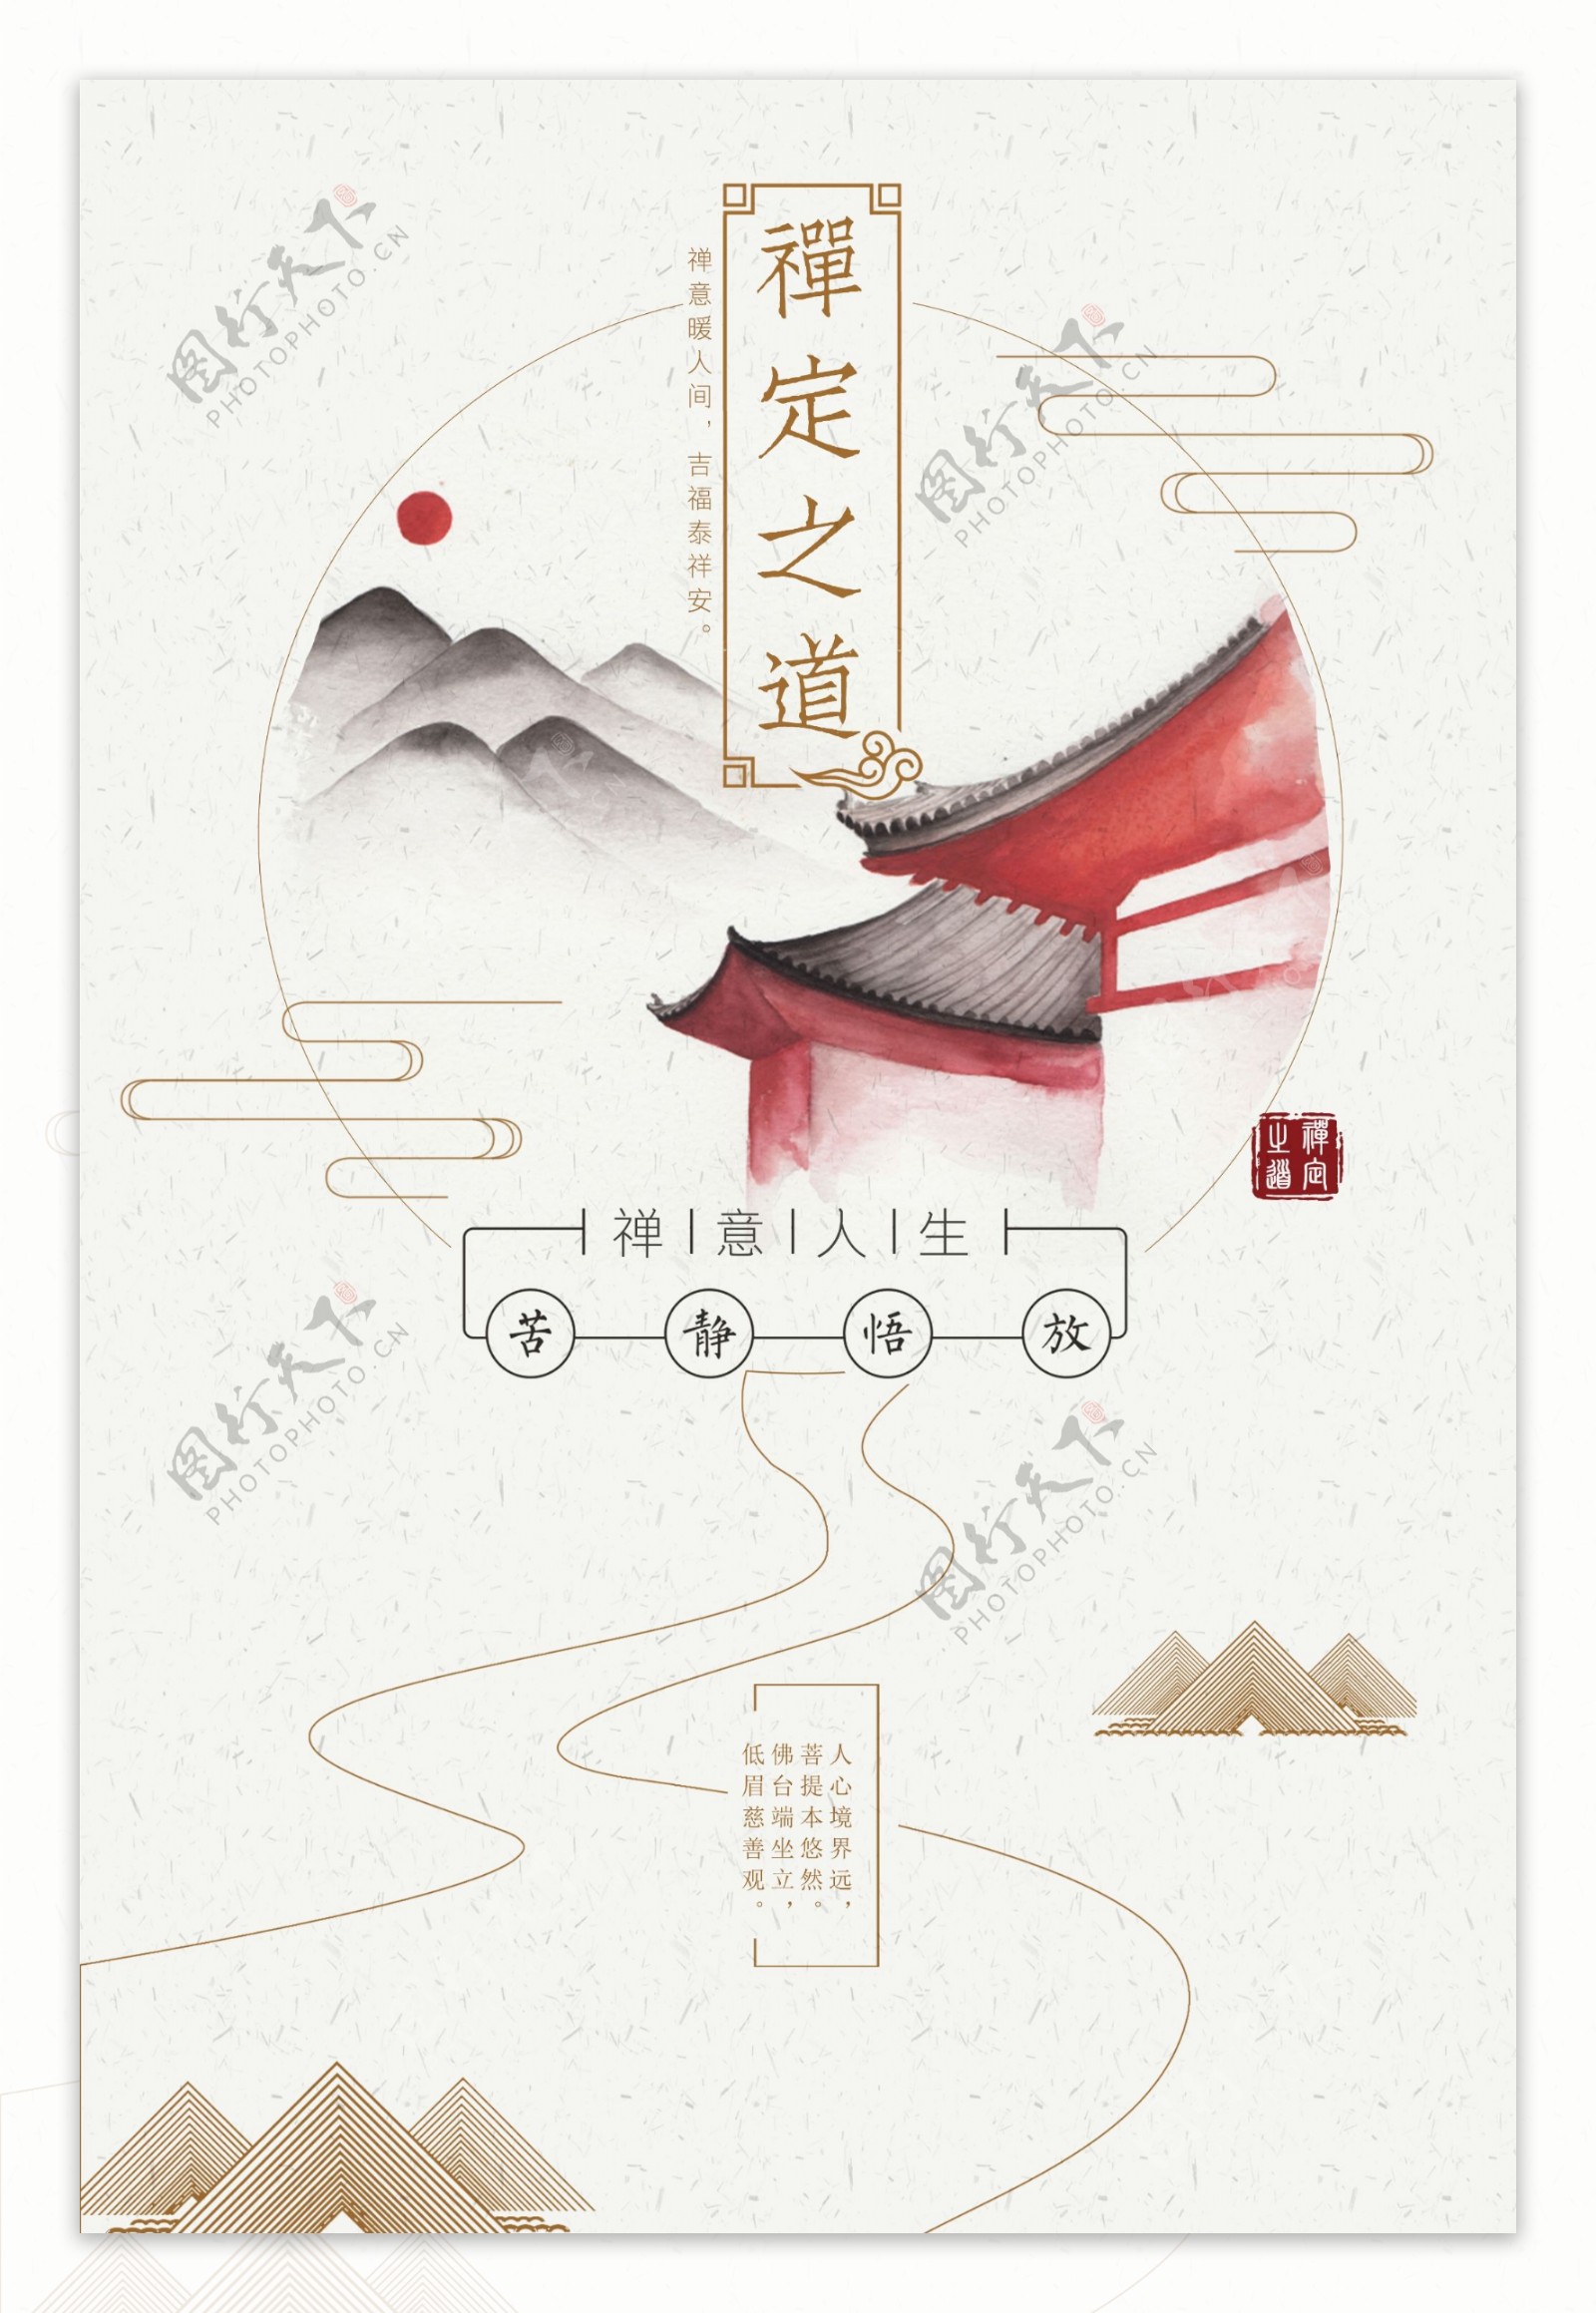 中国风禅意创意海报